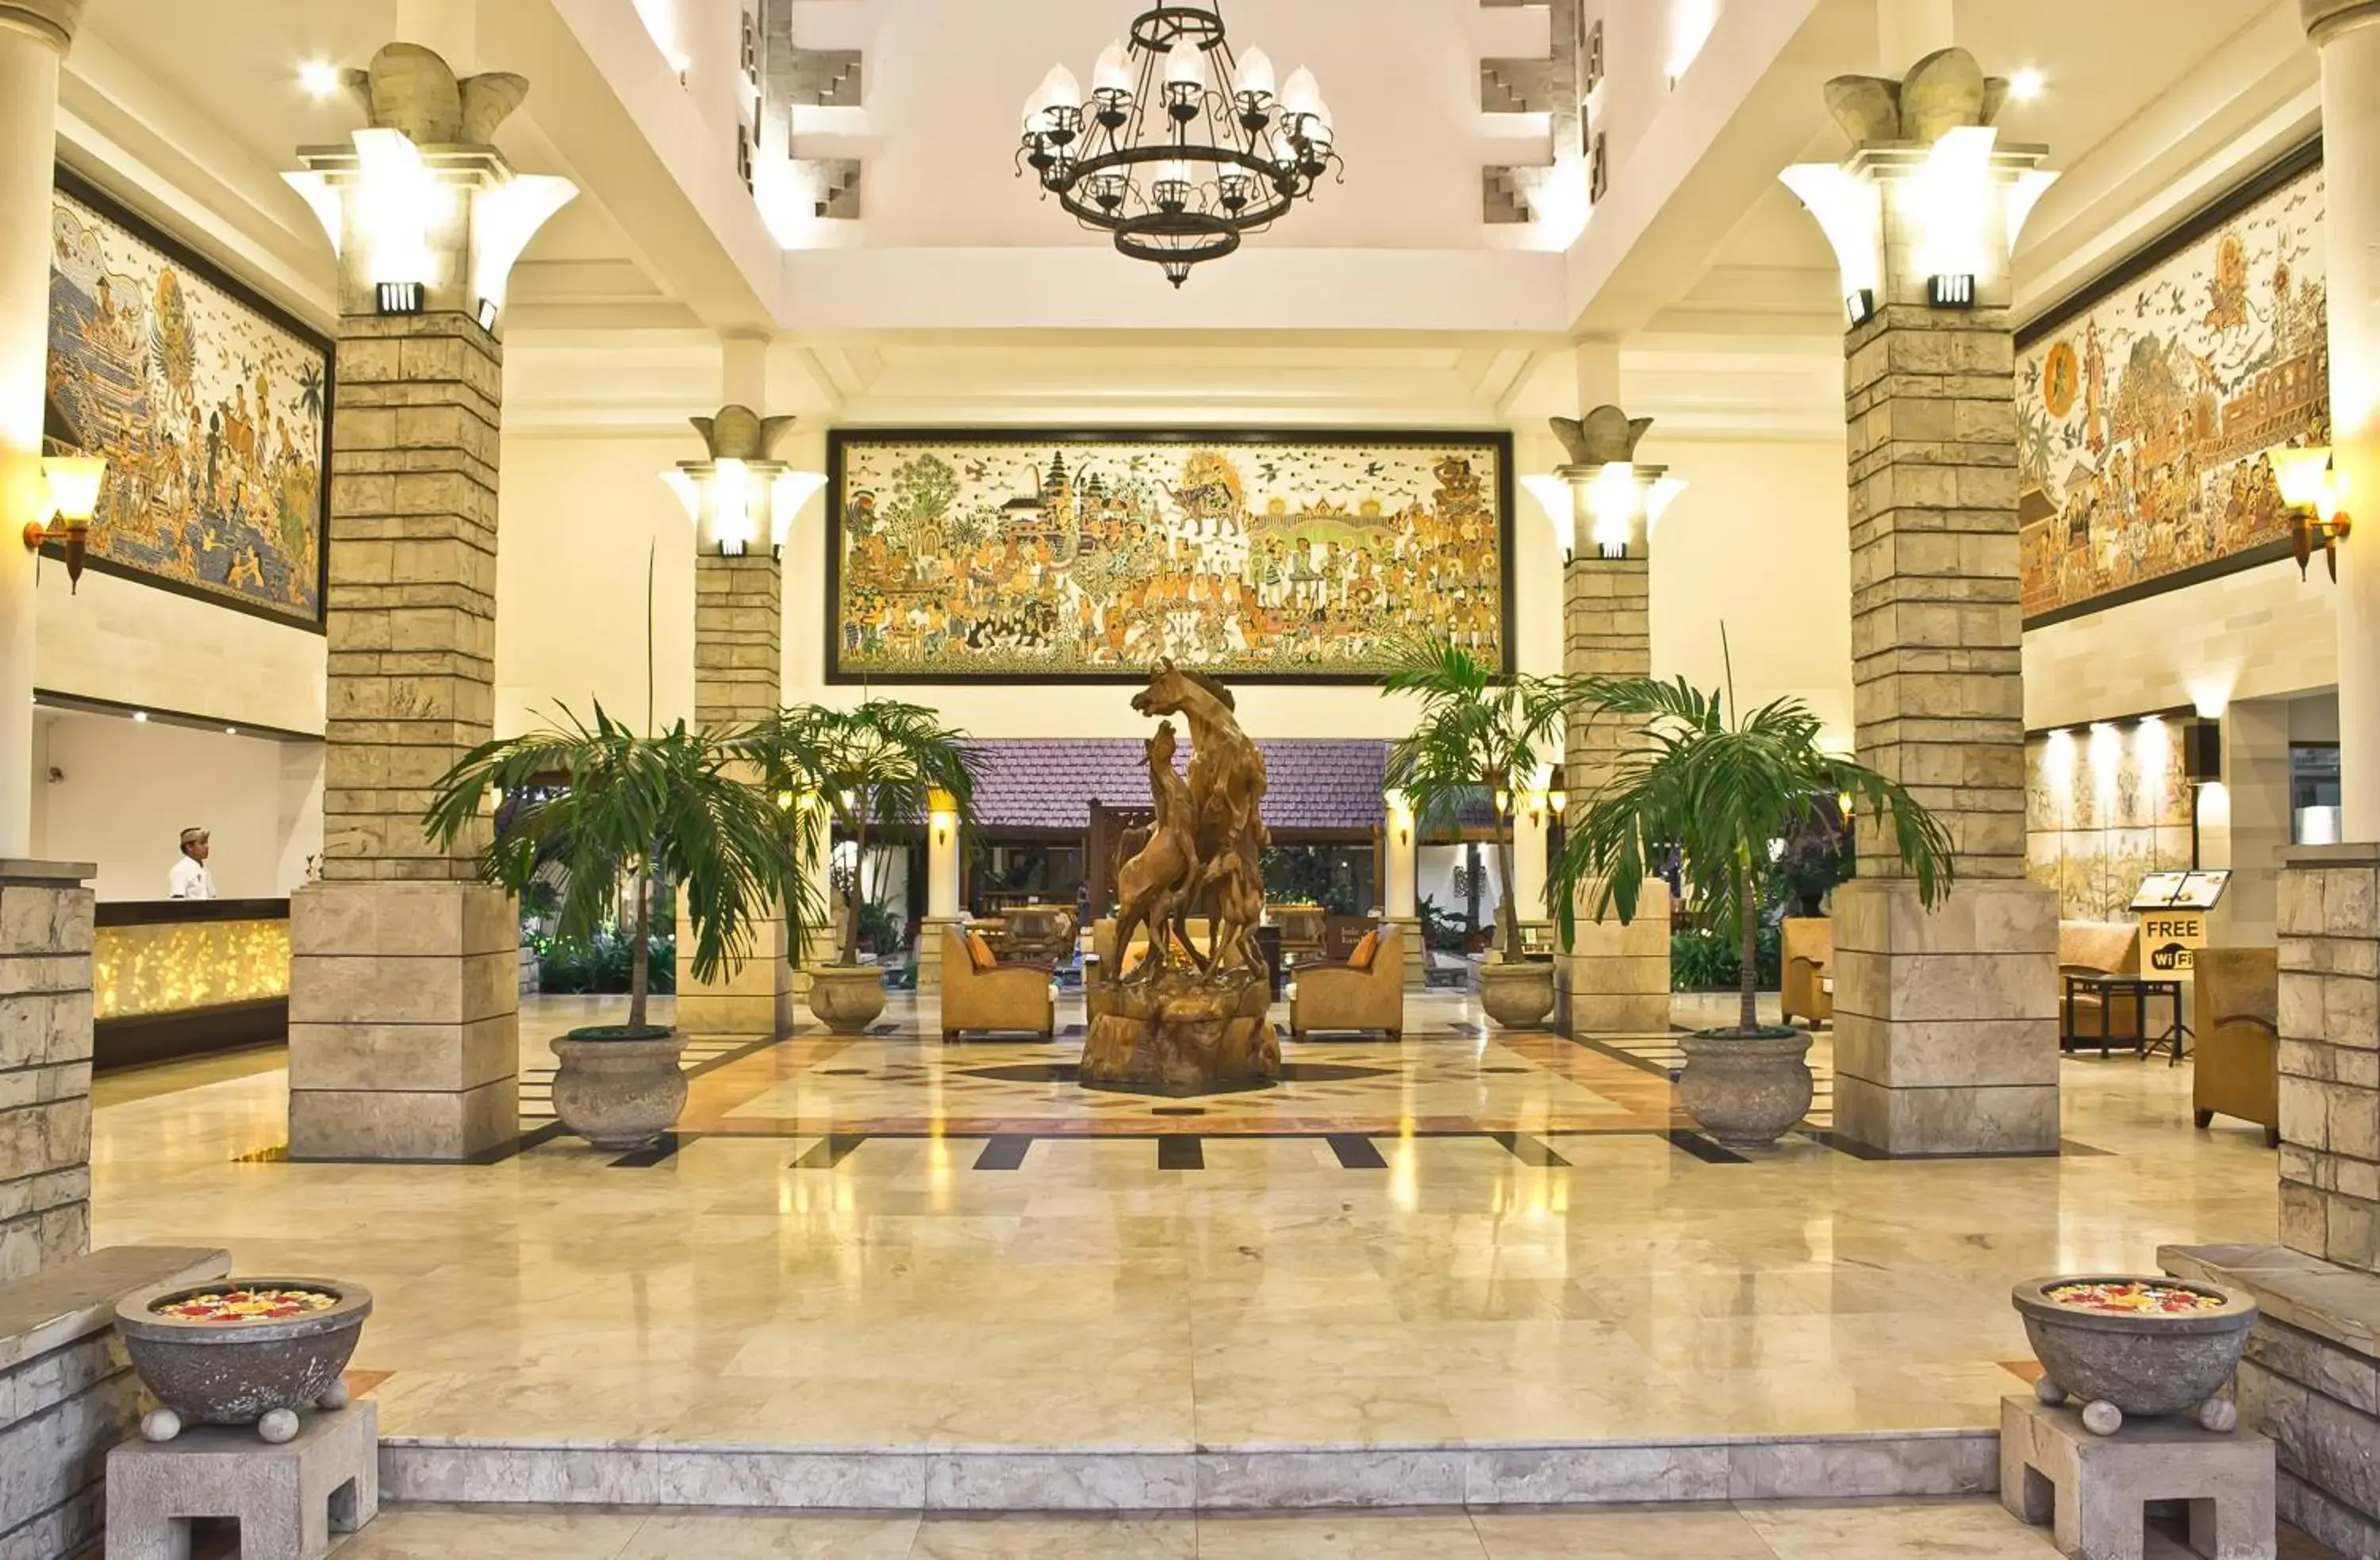 Lobby or reception in Bali Rani Hotel